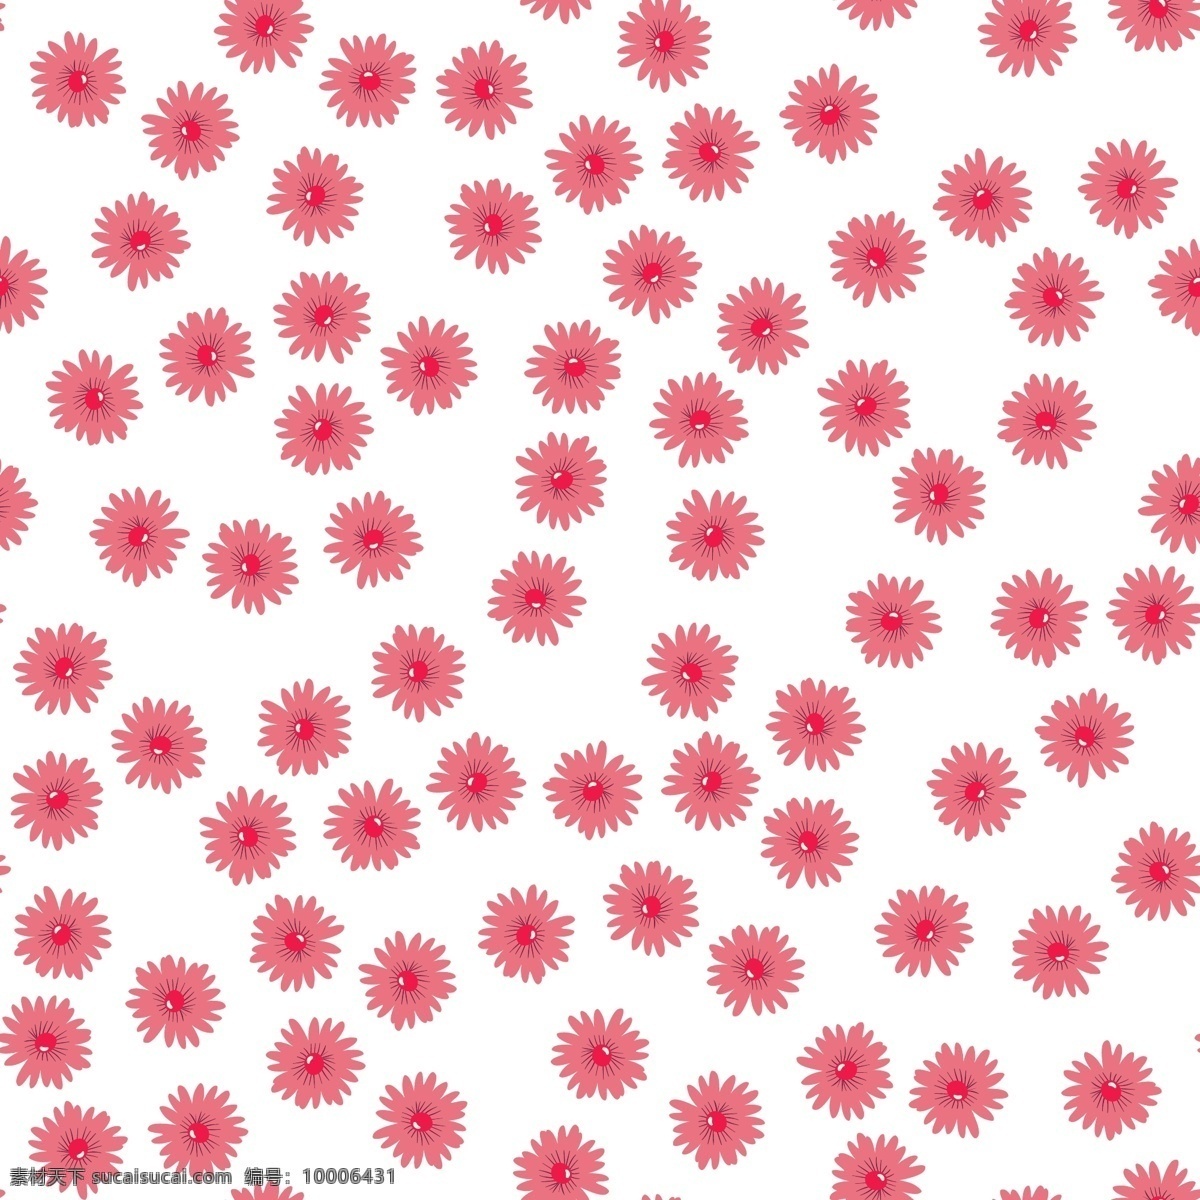 粉红色 花朵 图案 背景 花卉 夏季 自然 春季 装饰 马赛克 无缝 循环